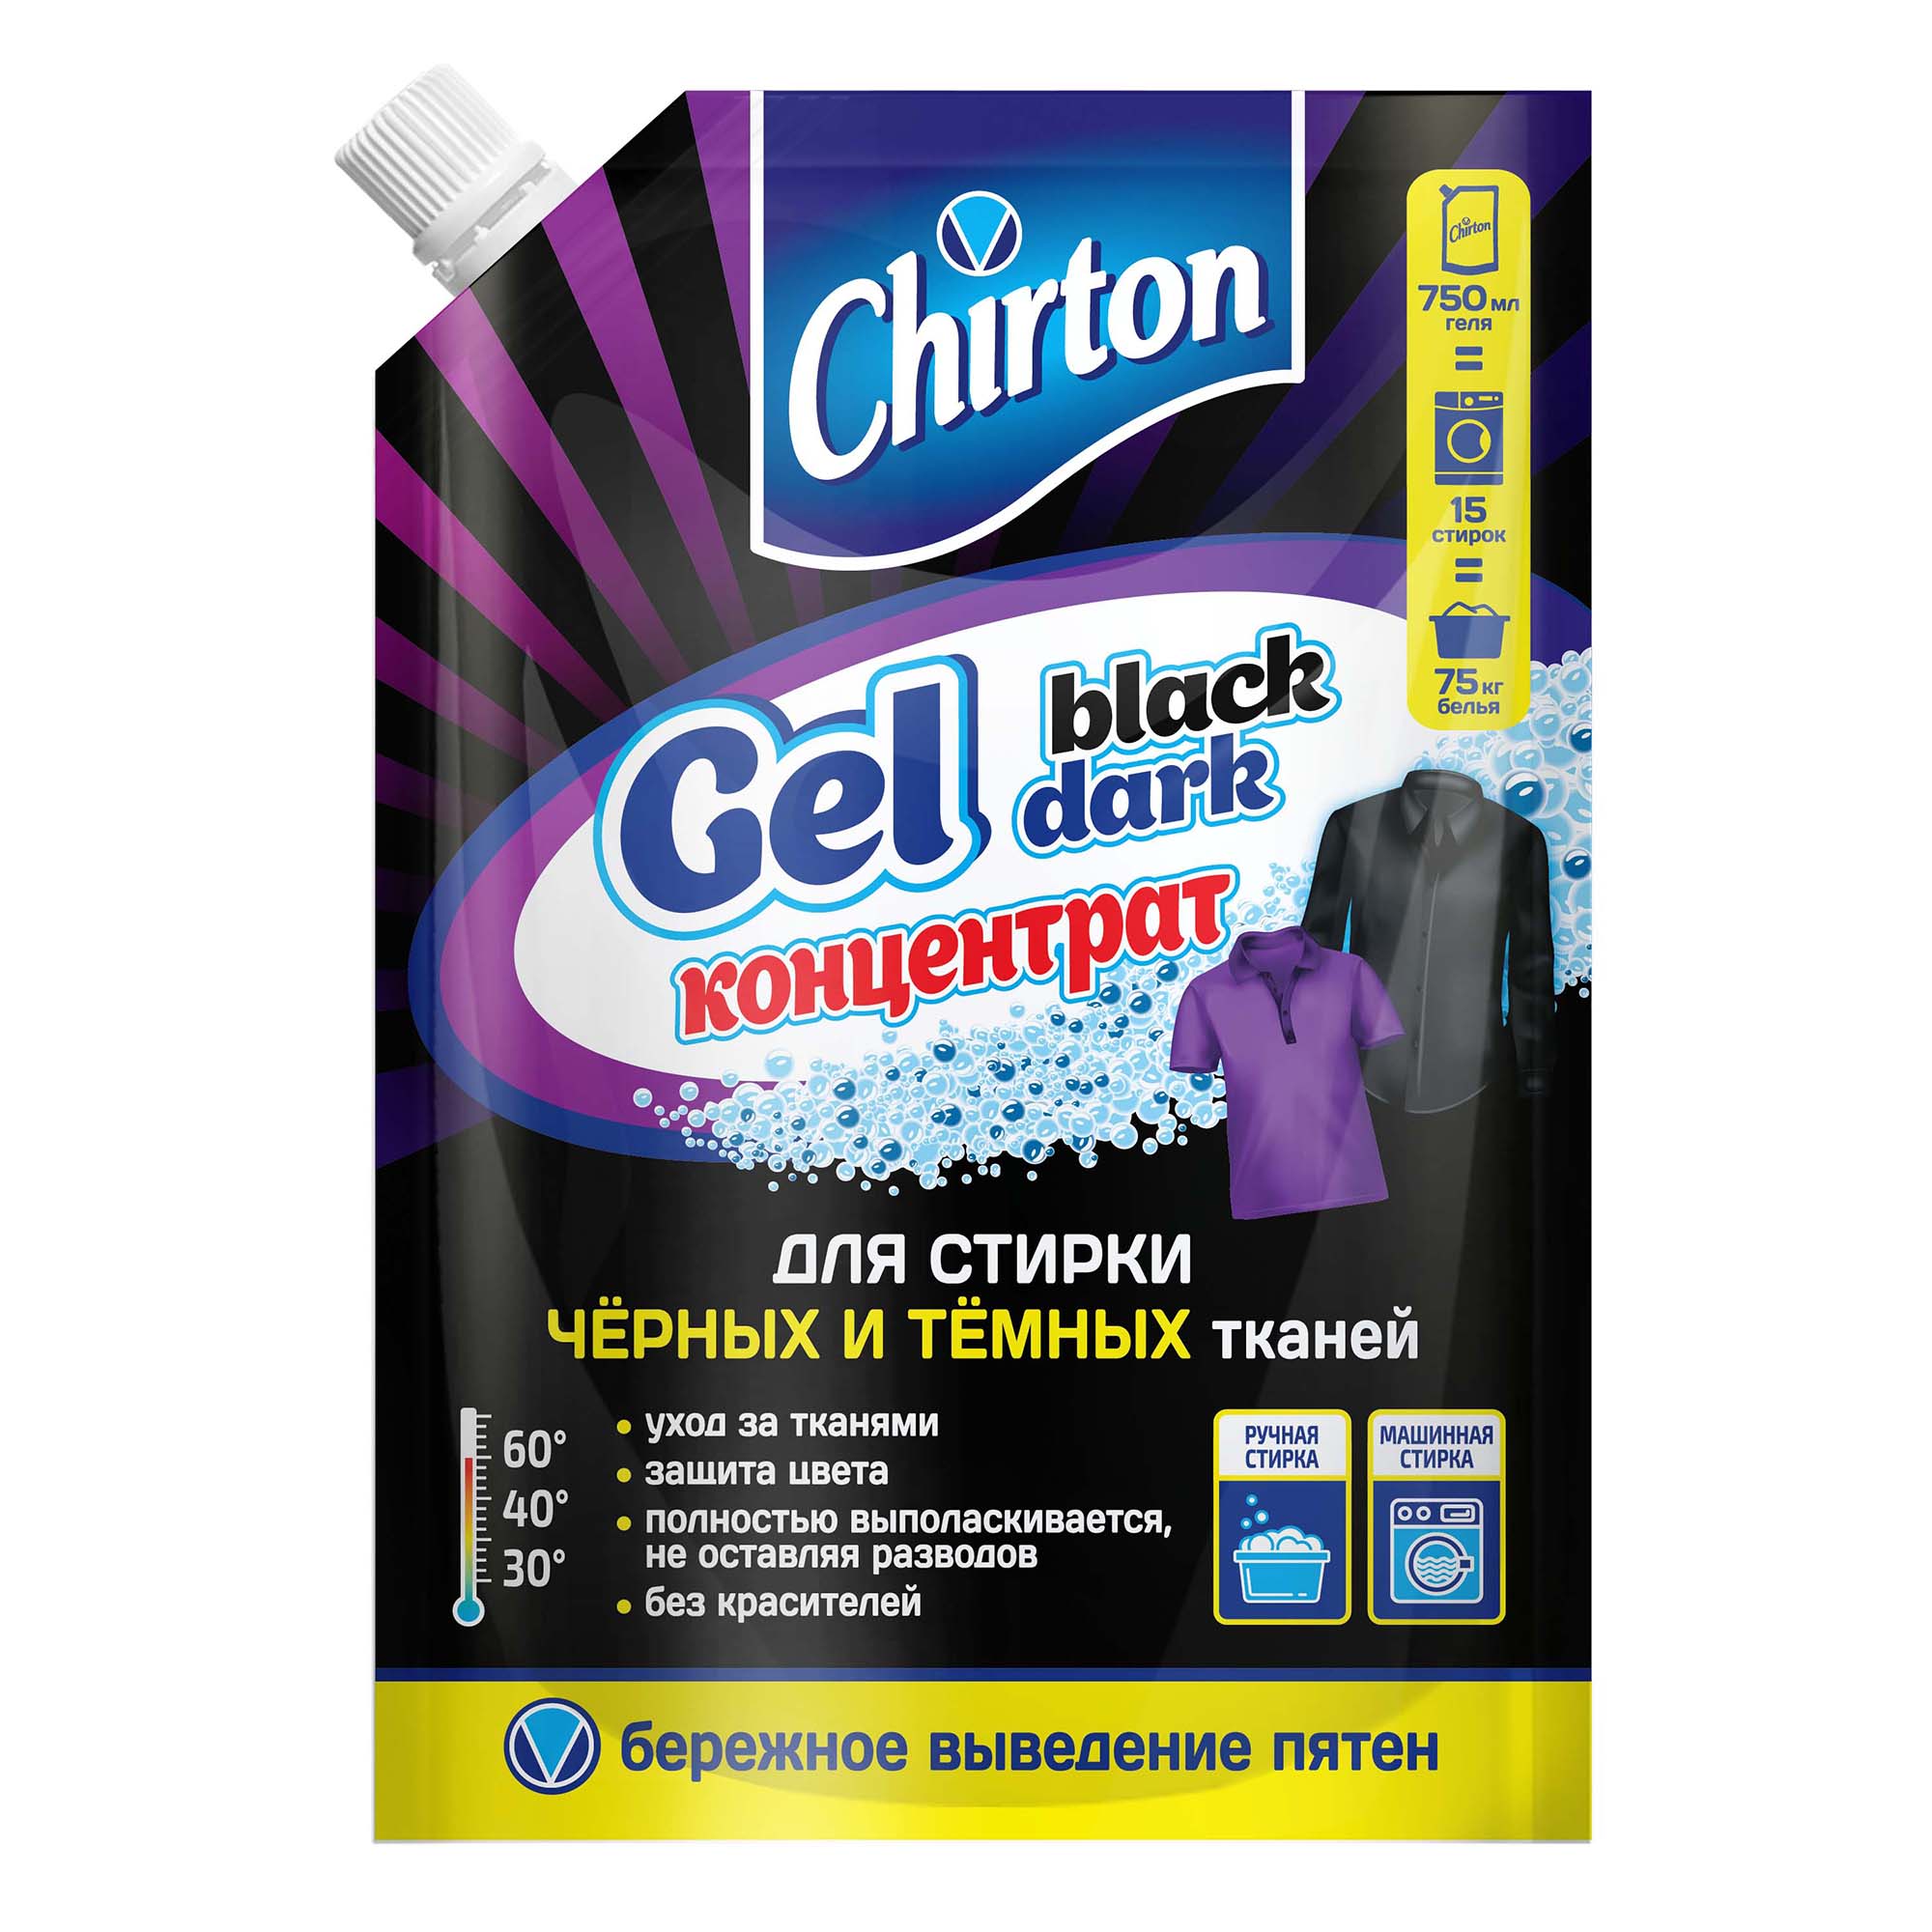 Гель-концентрат для стирки Chirton черных тканей 750мл - фото 1